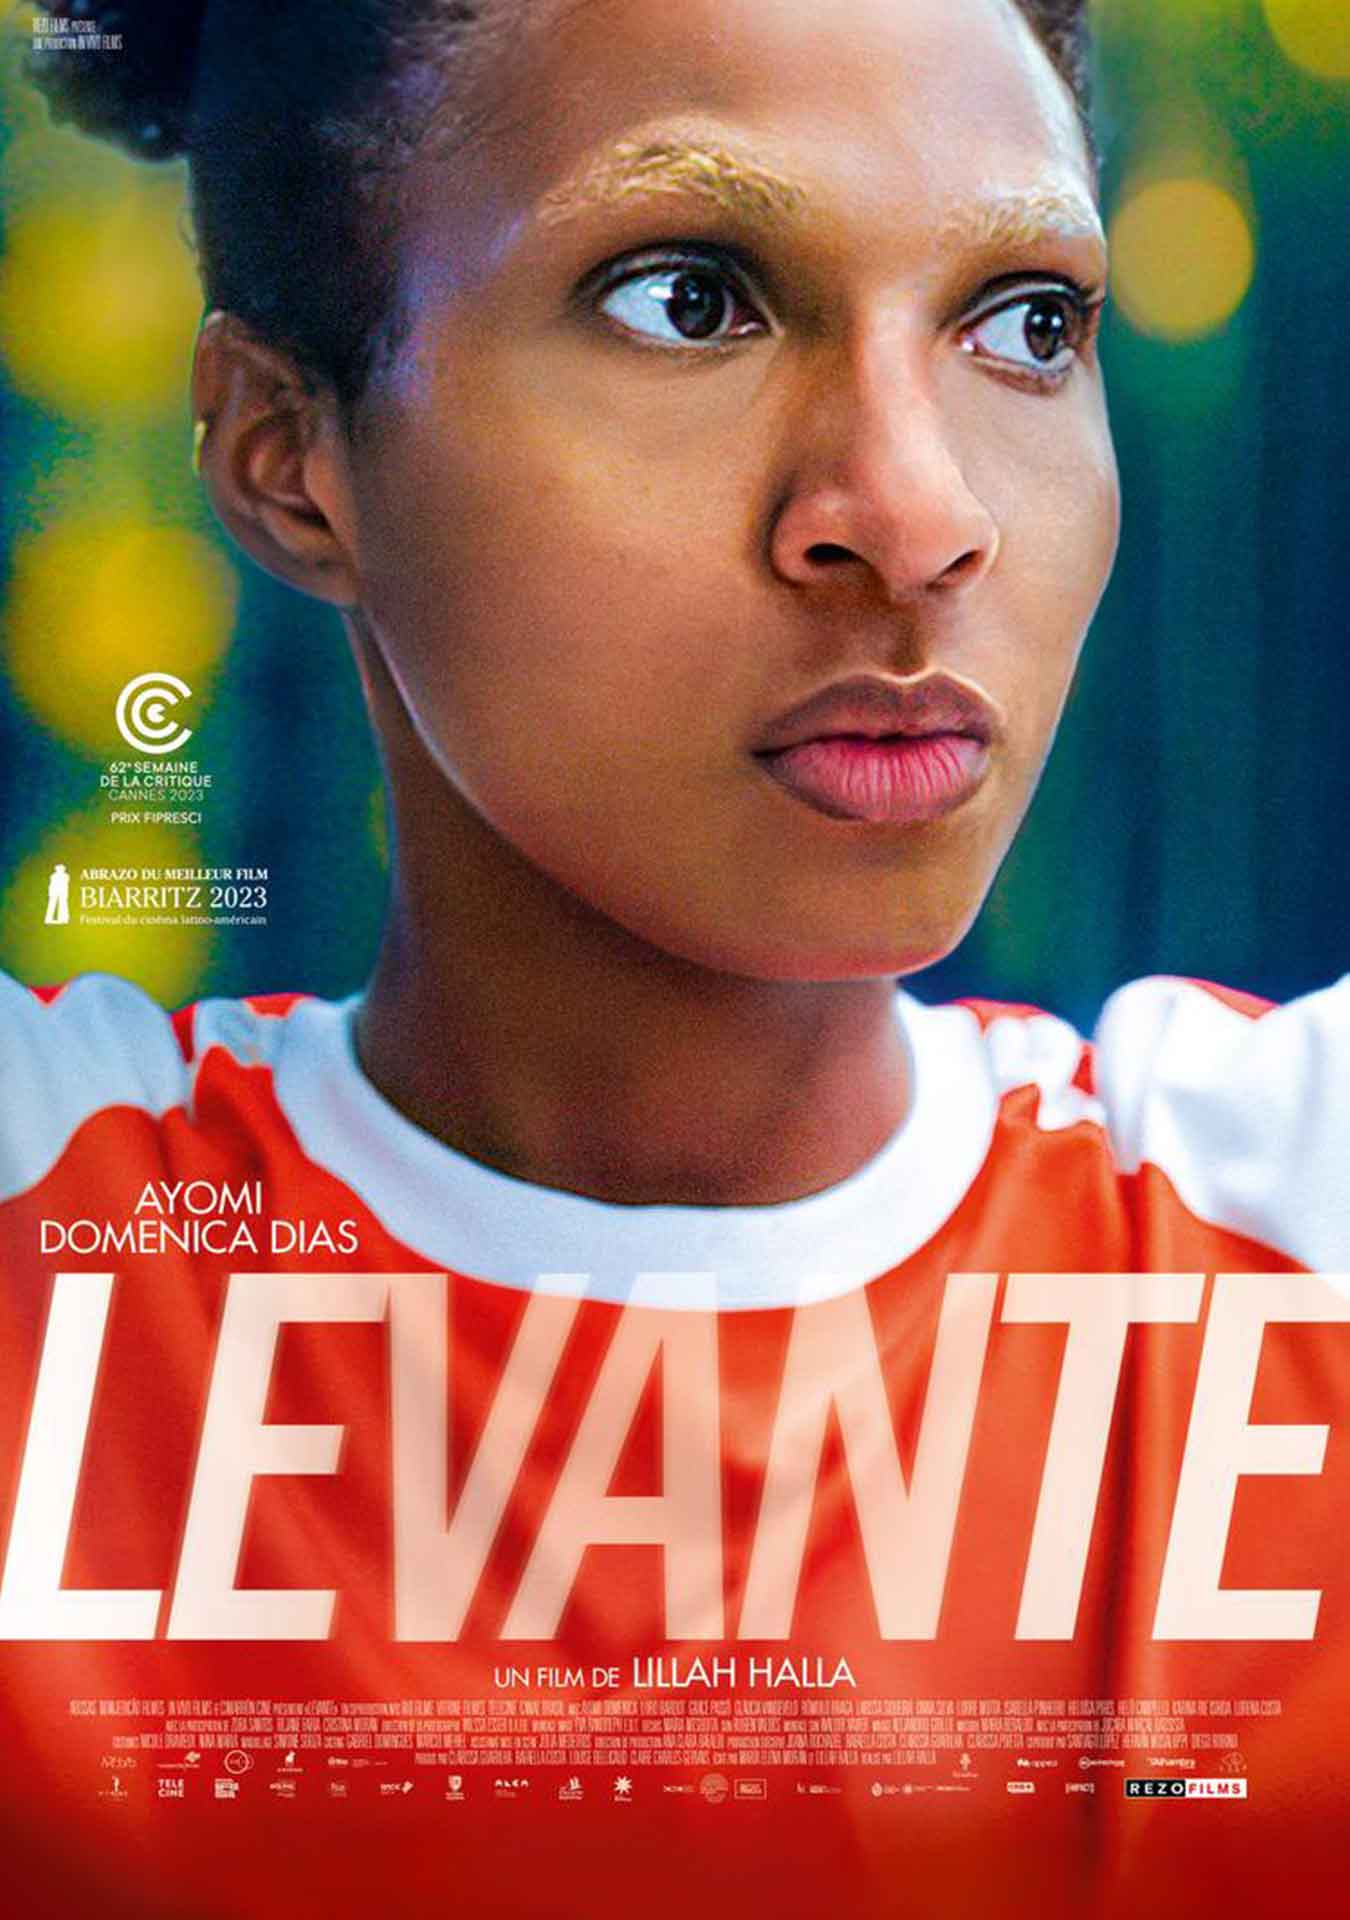 Levante-Poster- parceria de sucesso com a cinefilm*